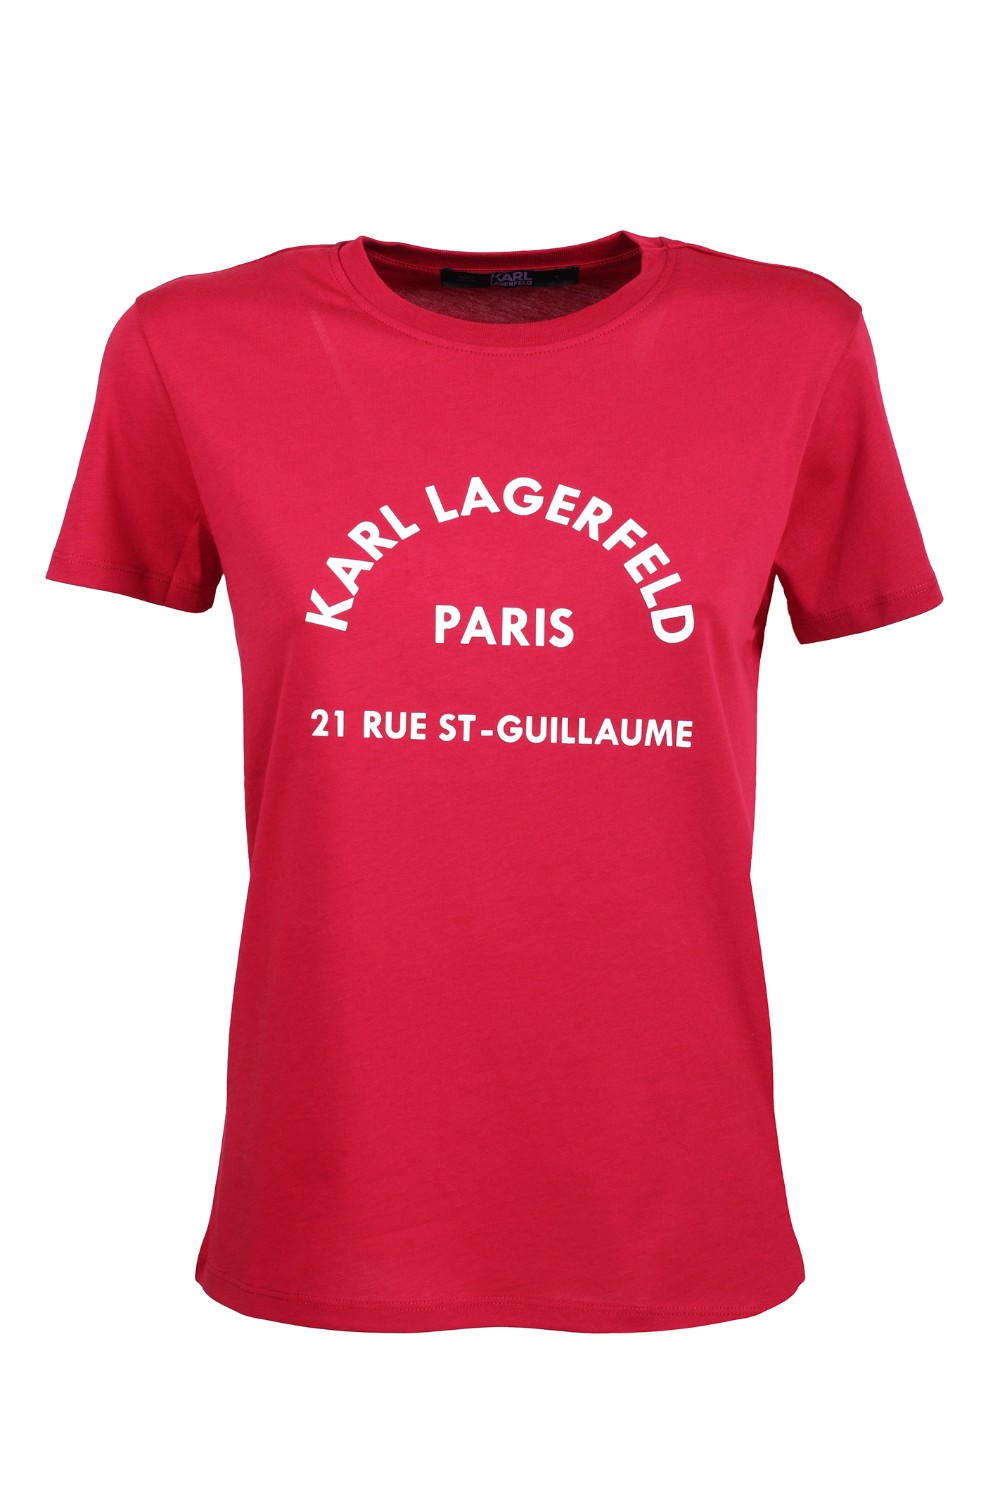 shop KARL LAGERFELD  T-shirt: Karl Lagerfeld t-shirt con indirizzo KL.
Girocollo.
Maniche corte.
Dettaglio stampa sul petto.
Vestibilità regolare.
Composizione: 100% cotone.. 29KW1730-RUMBA RED number 7850464